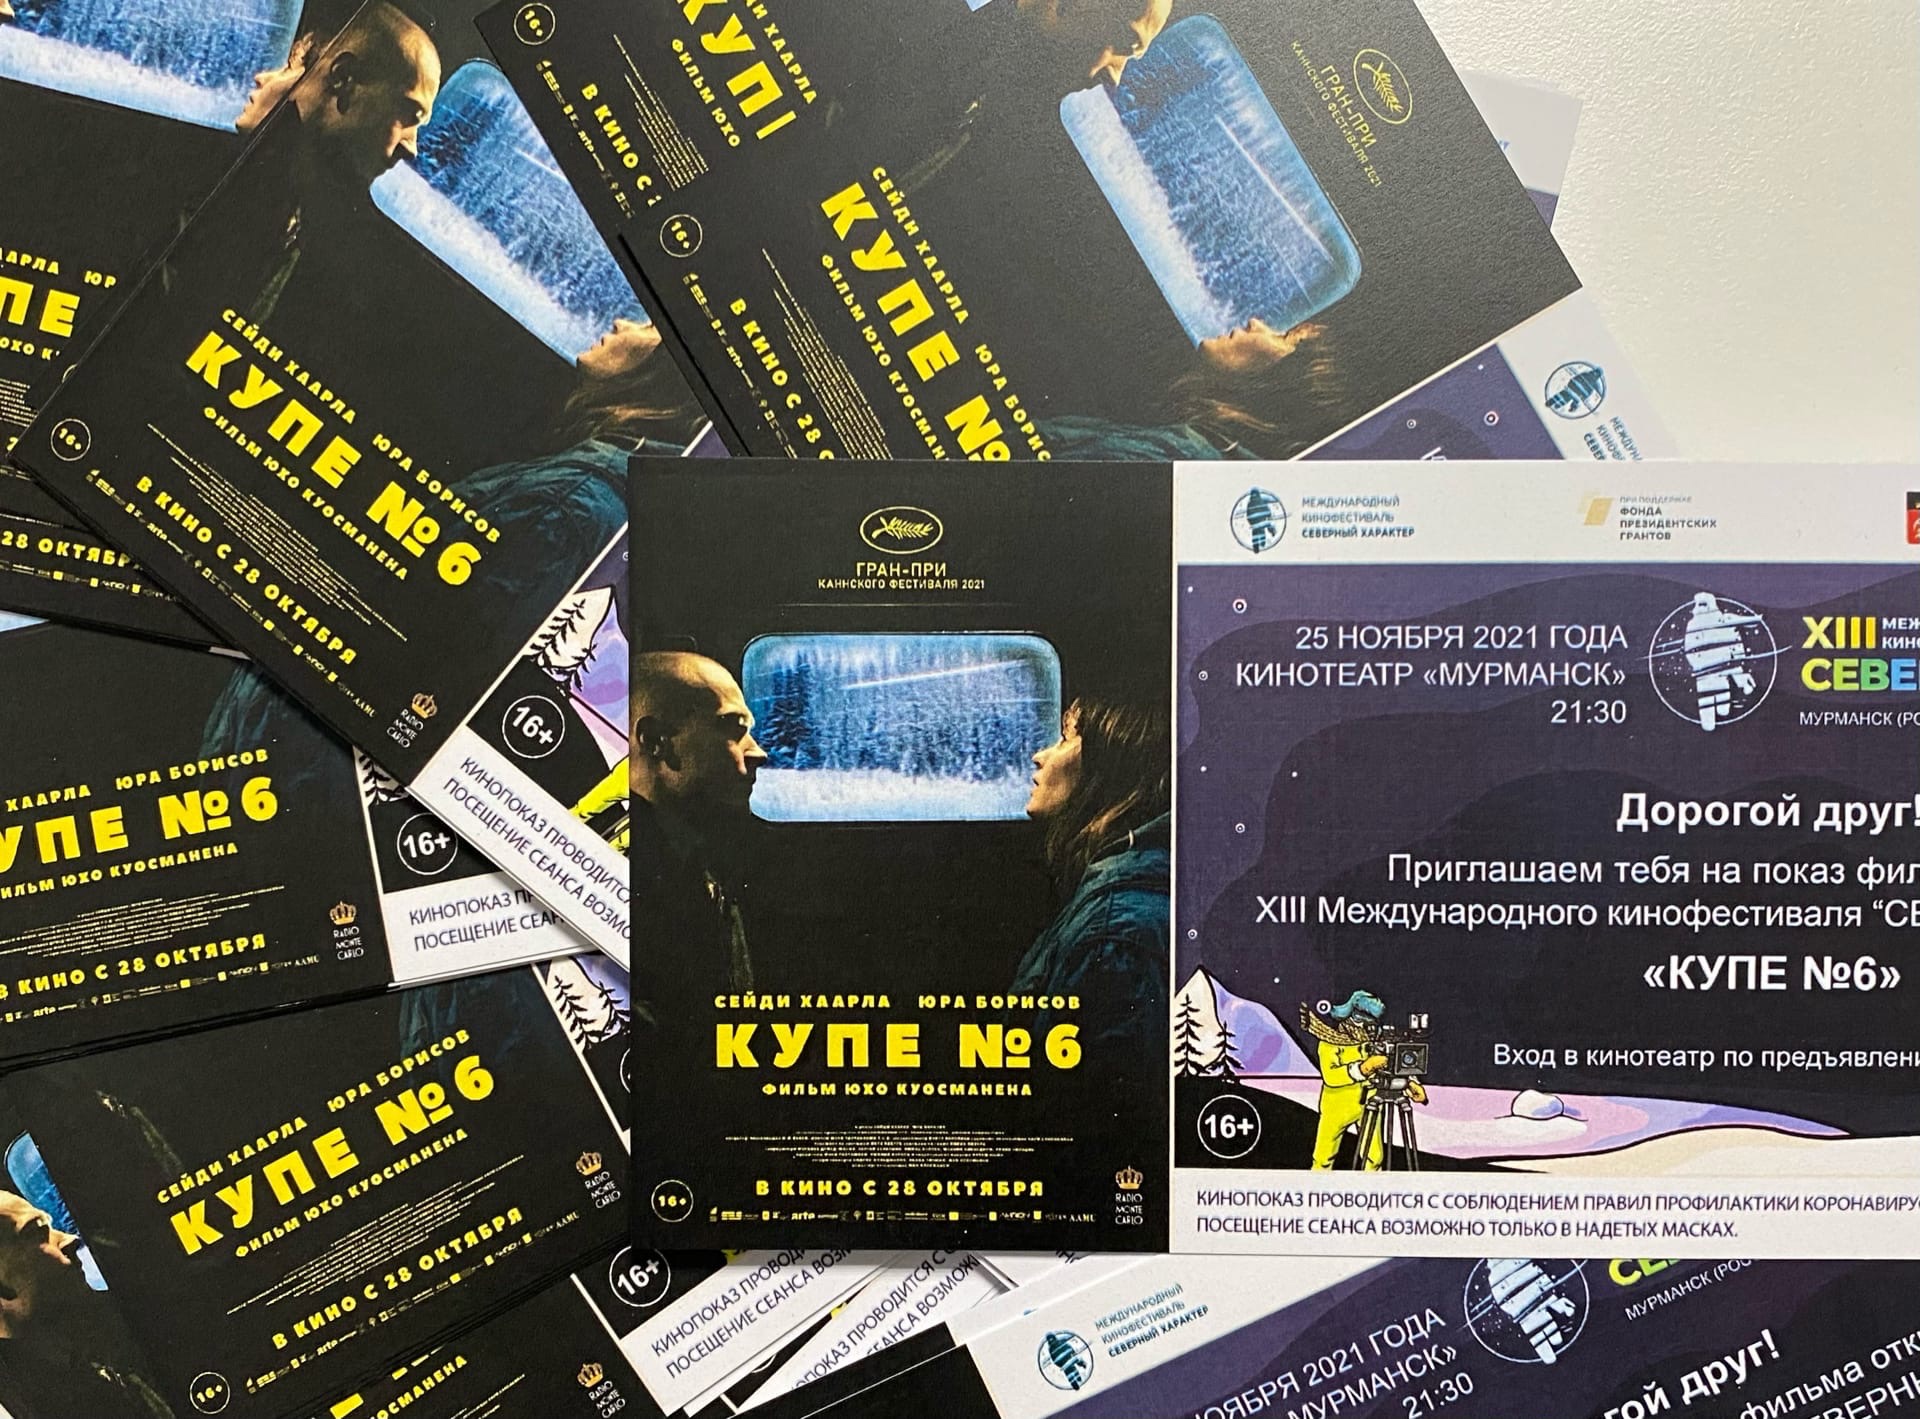 Мурманский кинофестиваль первым в России покажет фильм «Купе №6», обладателя гран-при Каннского кинофестиваля